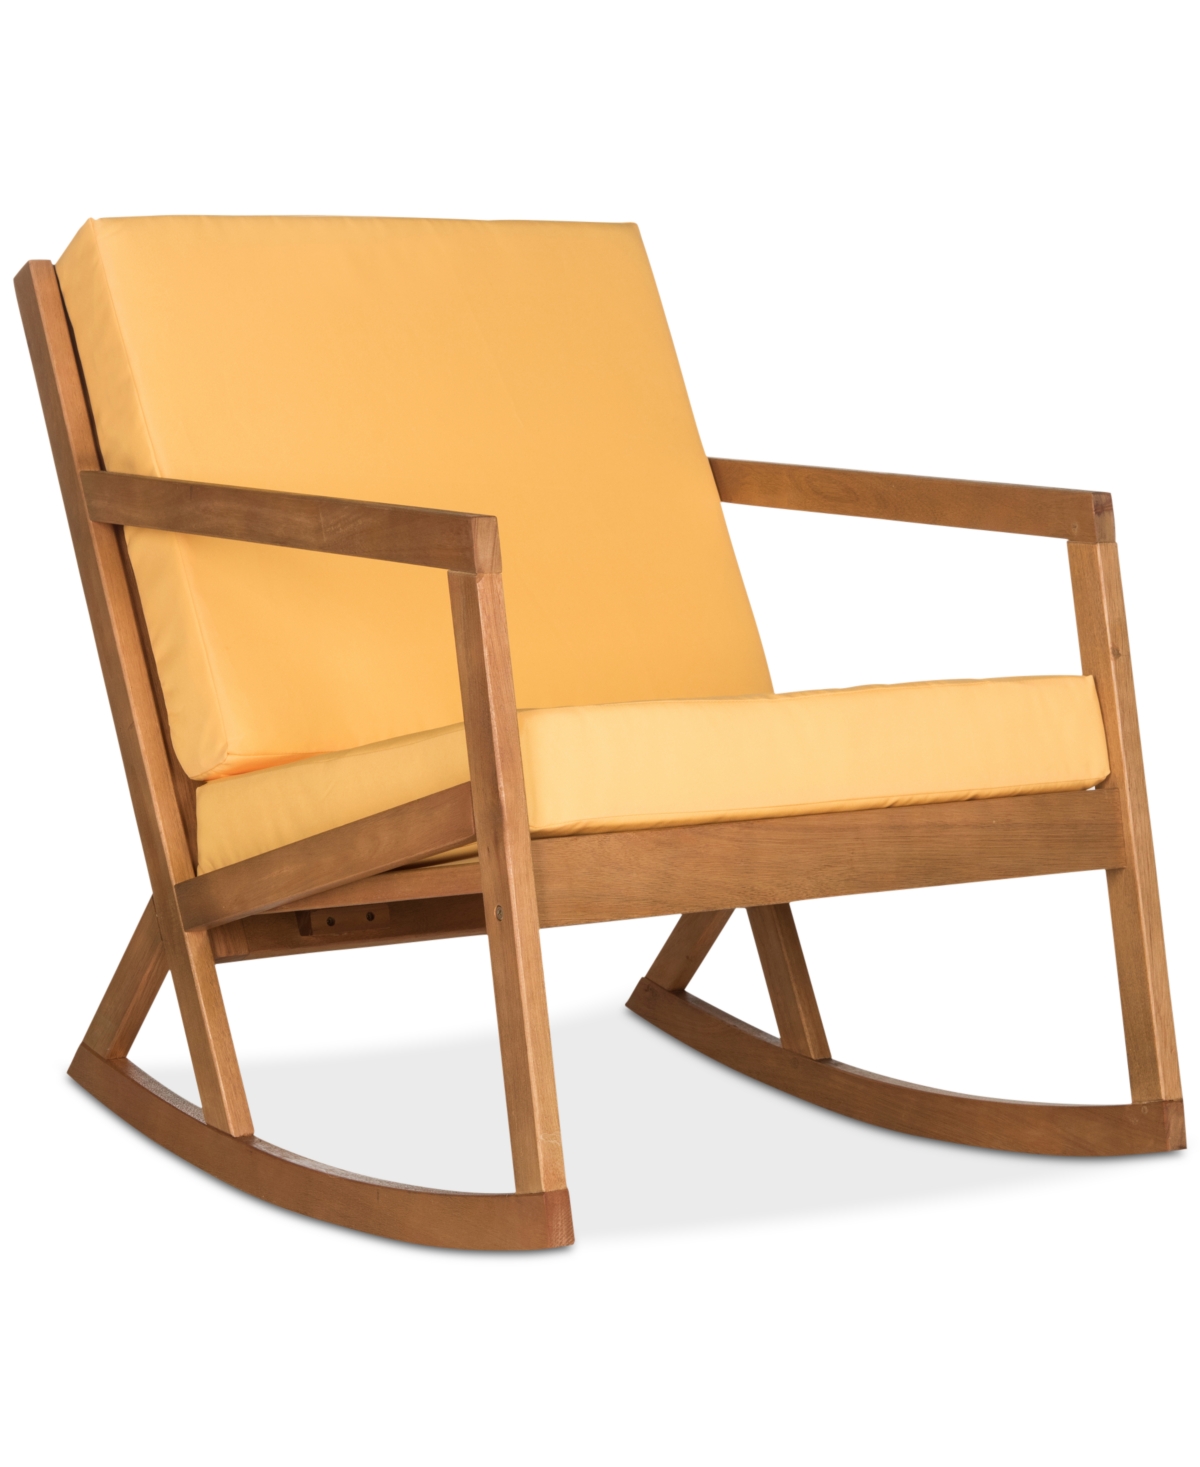 Shop Safavieh Nicksen Outdoor Rocking Chair In Teak Brown,yellow